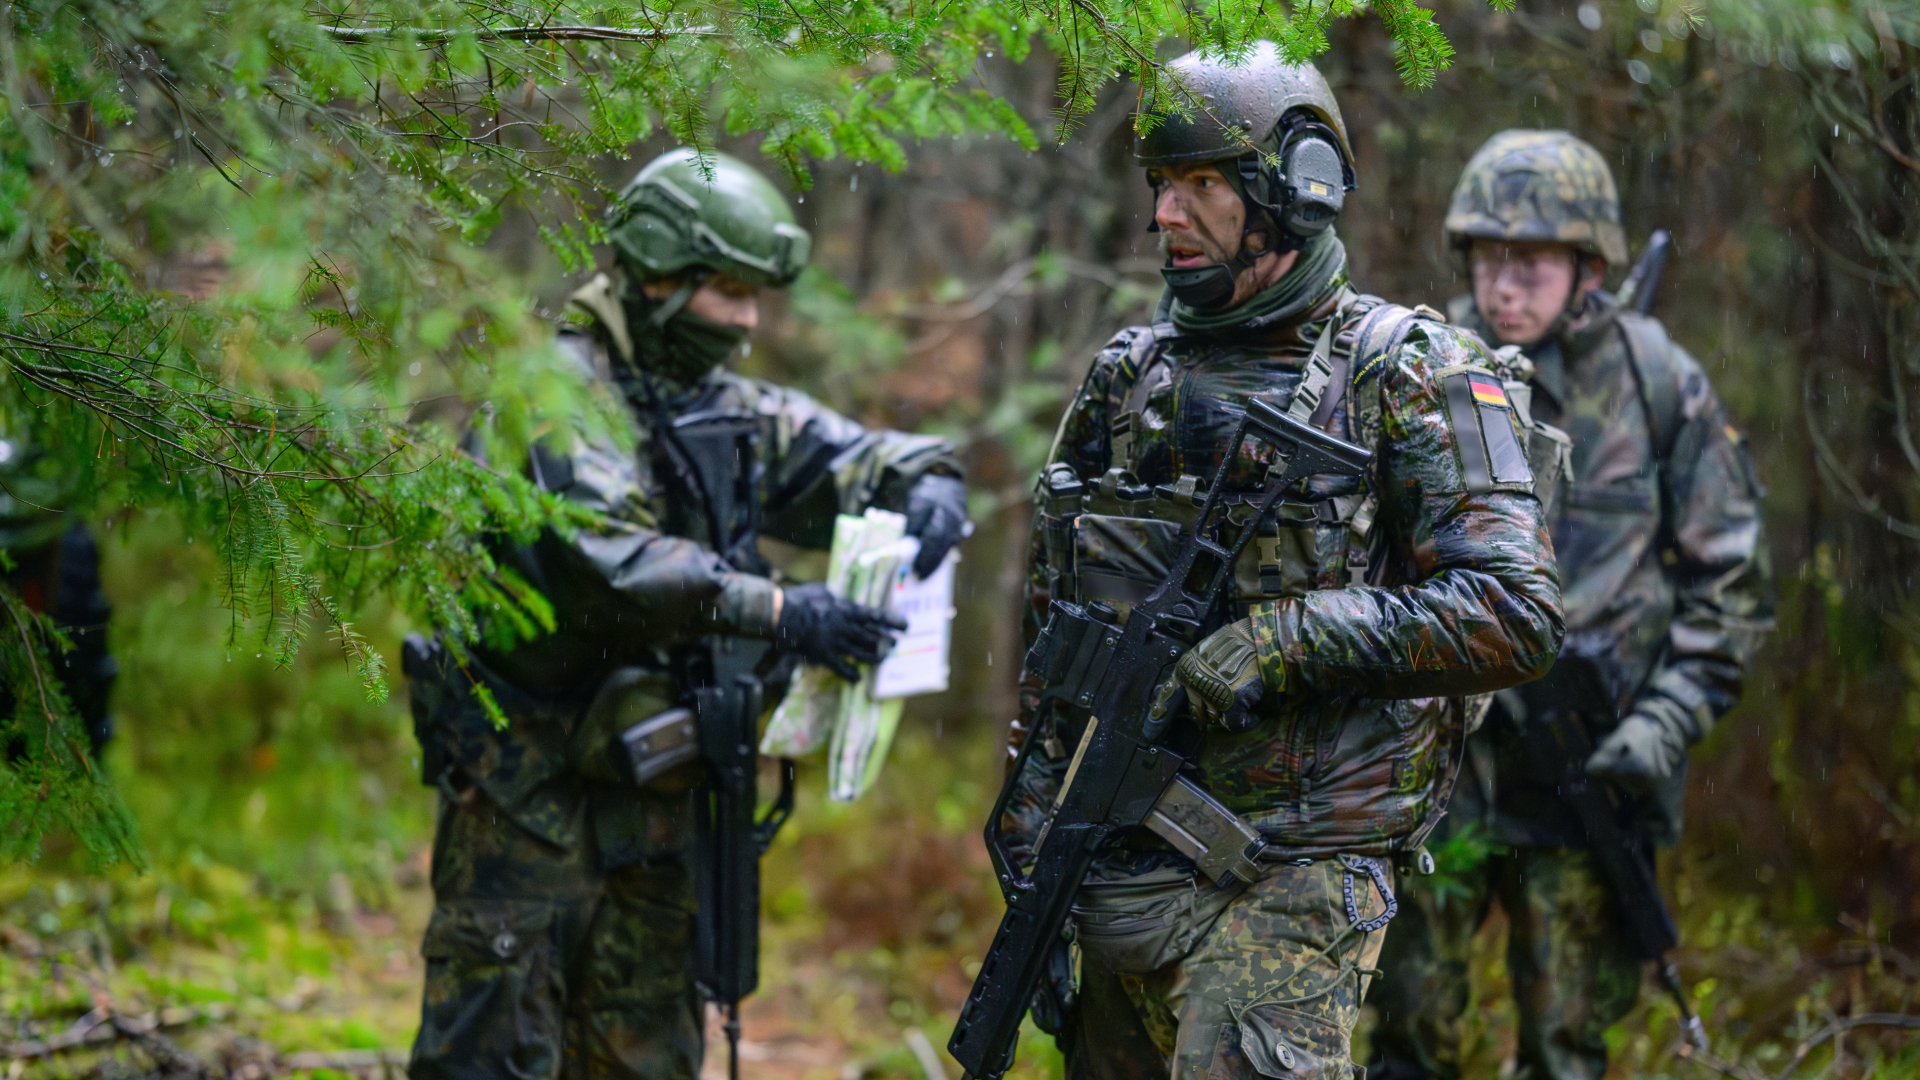 Soldaten der Bundeswehr stehen bei Regen während einer Übung im Wald.